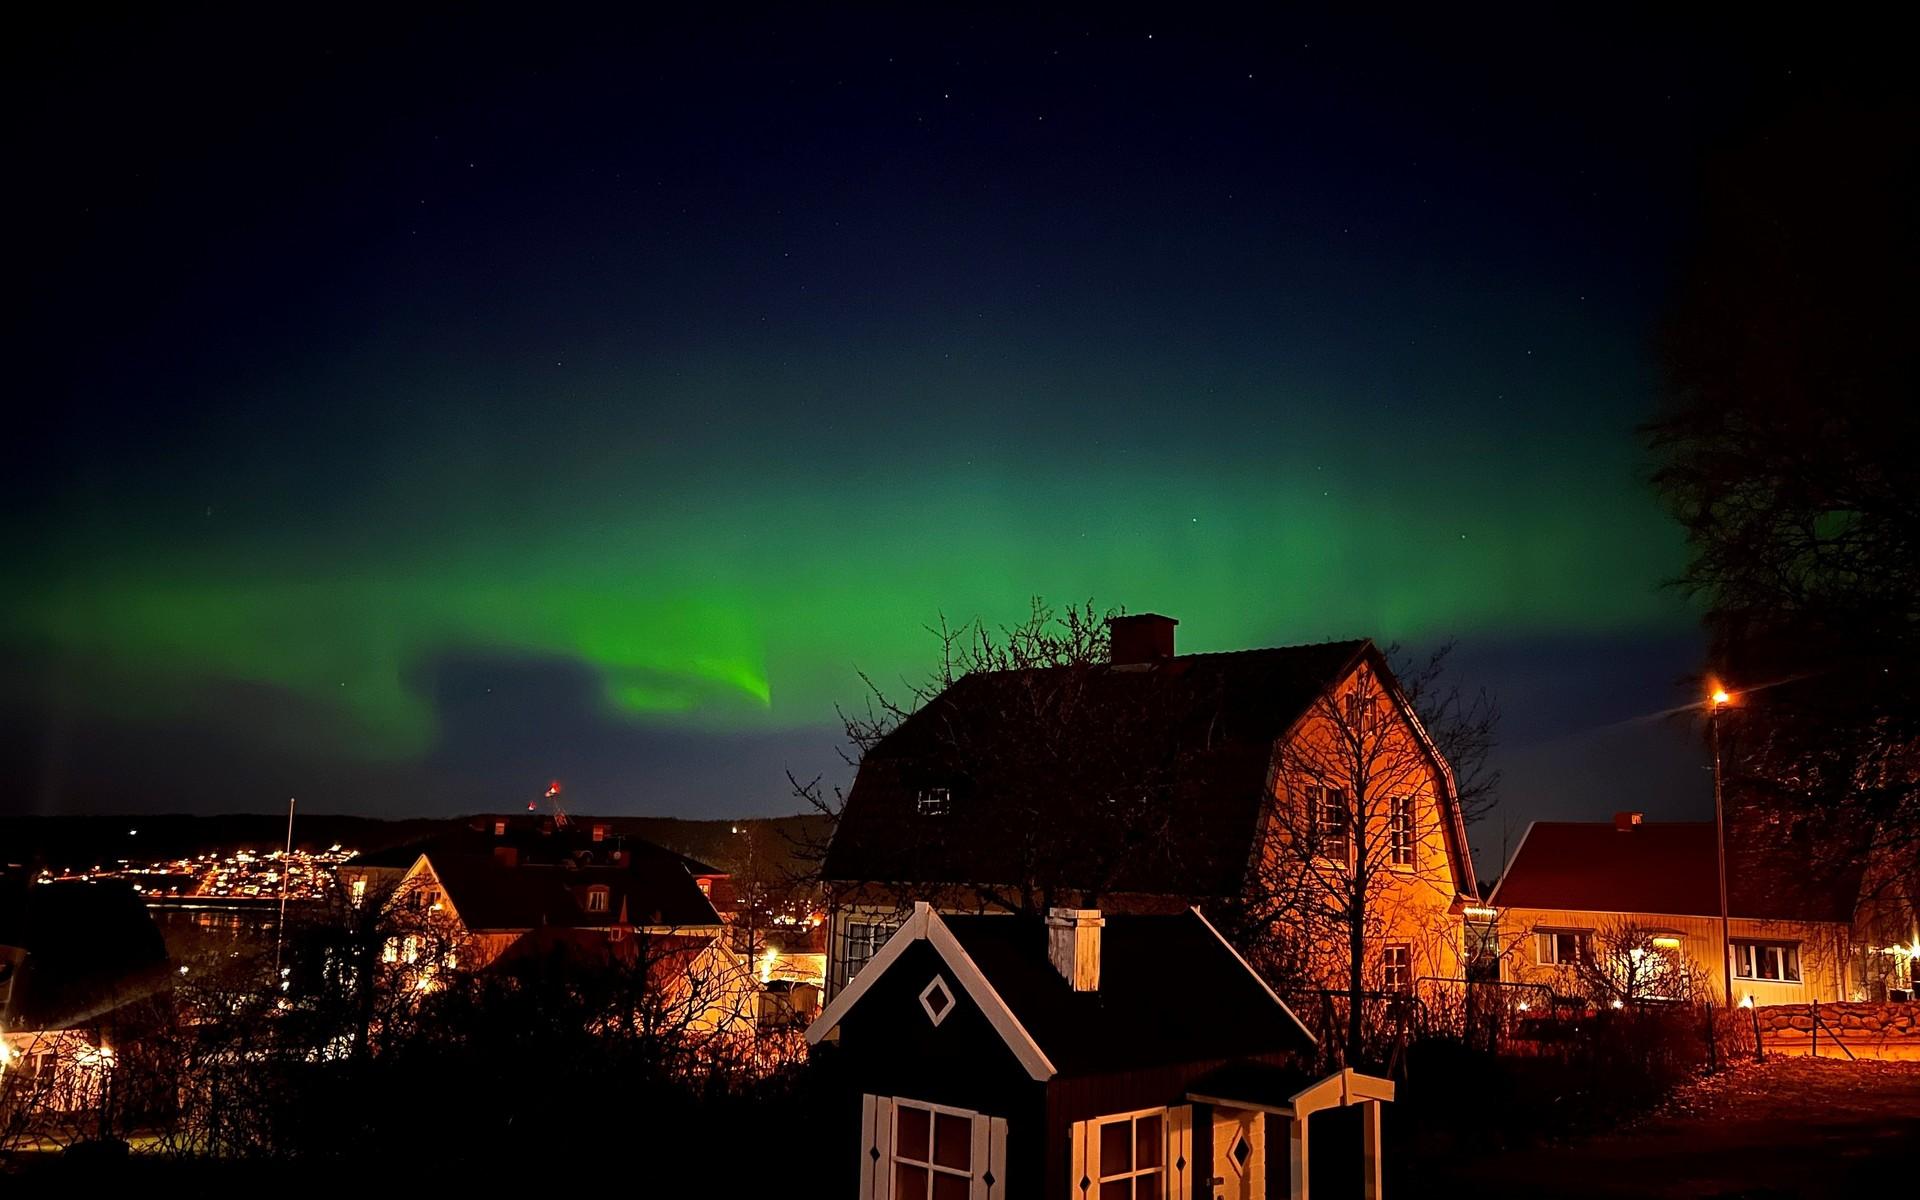 Catarina Coutinho Axelsson tog den här bilden av himlen i Ulricehamn. ”Helt magiskt”, skrev hon.